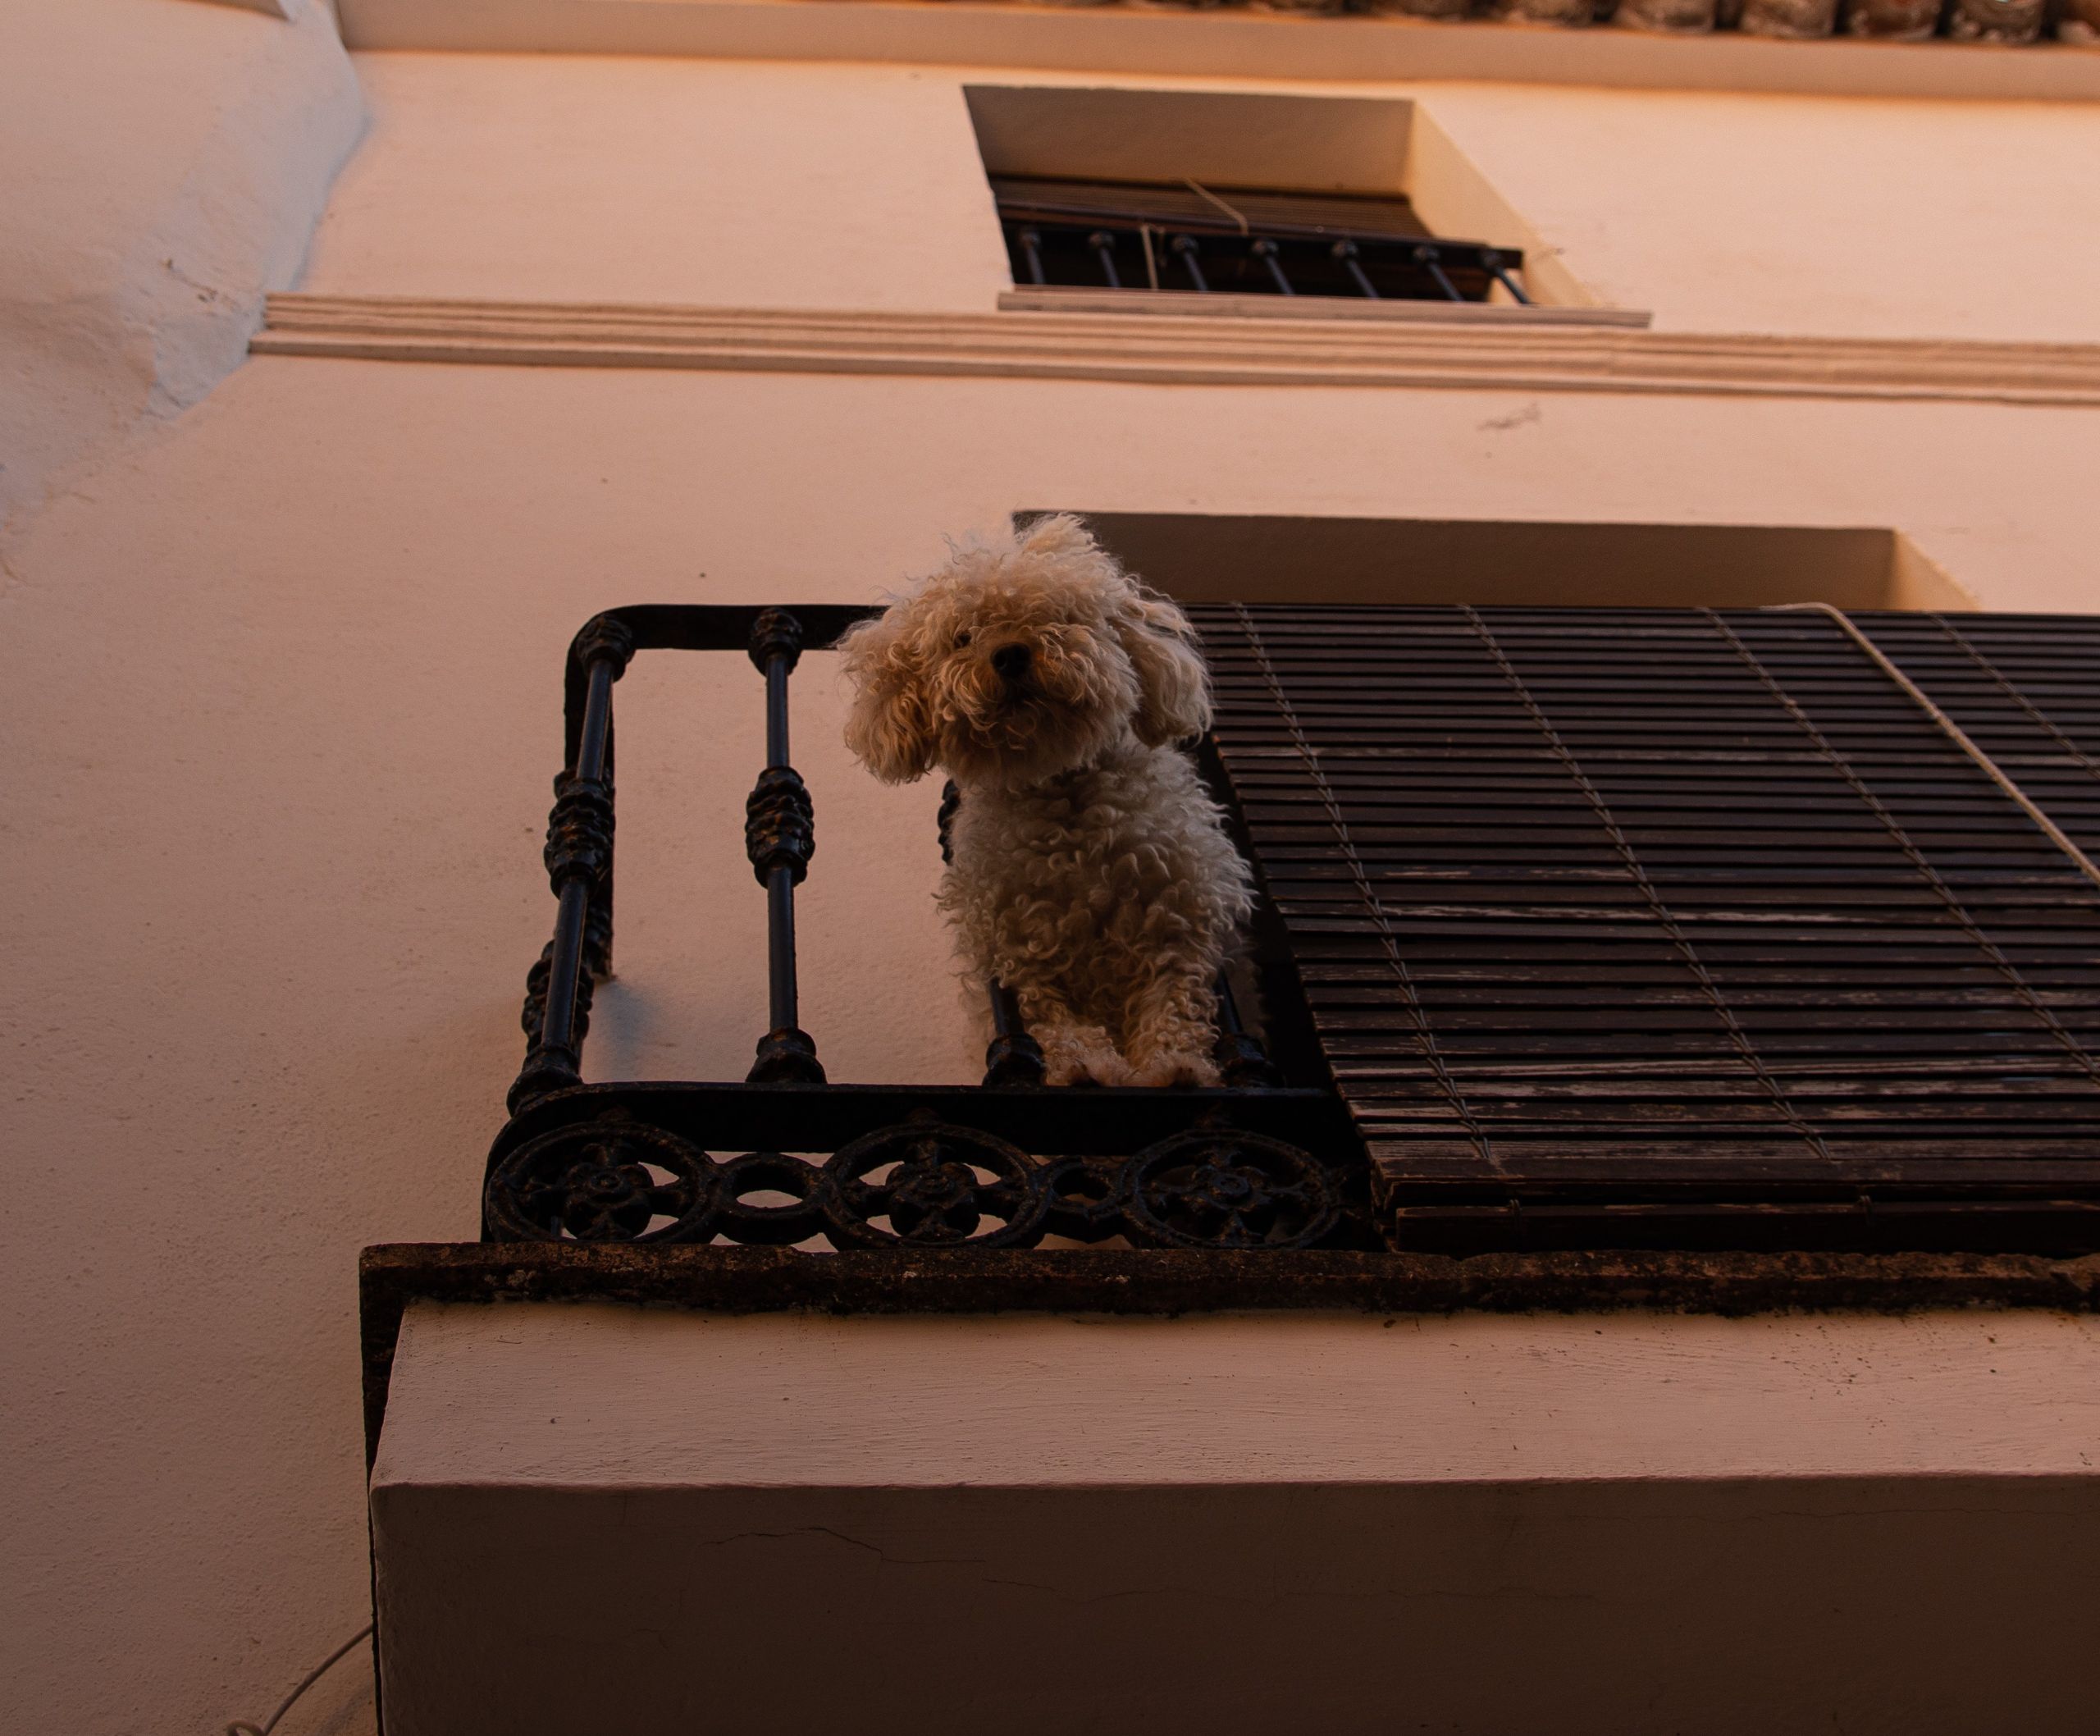 Κτηνοβασία Αμαλιάδα: «Είδα έναν άντρα γύρω στα 50 πάνω στο σκυλί μου»